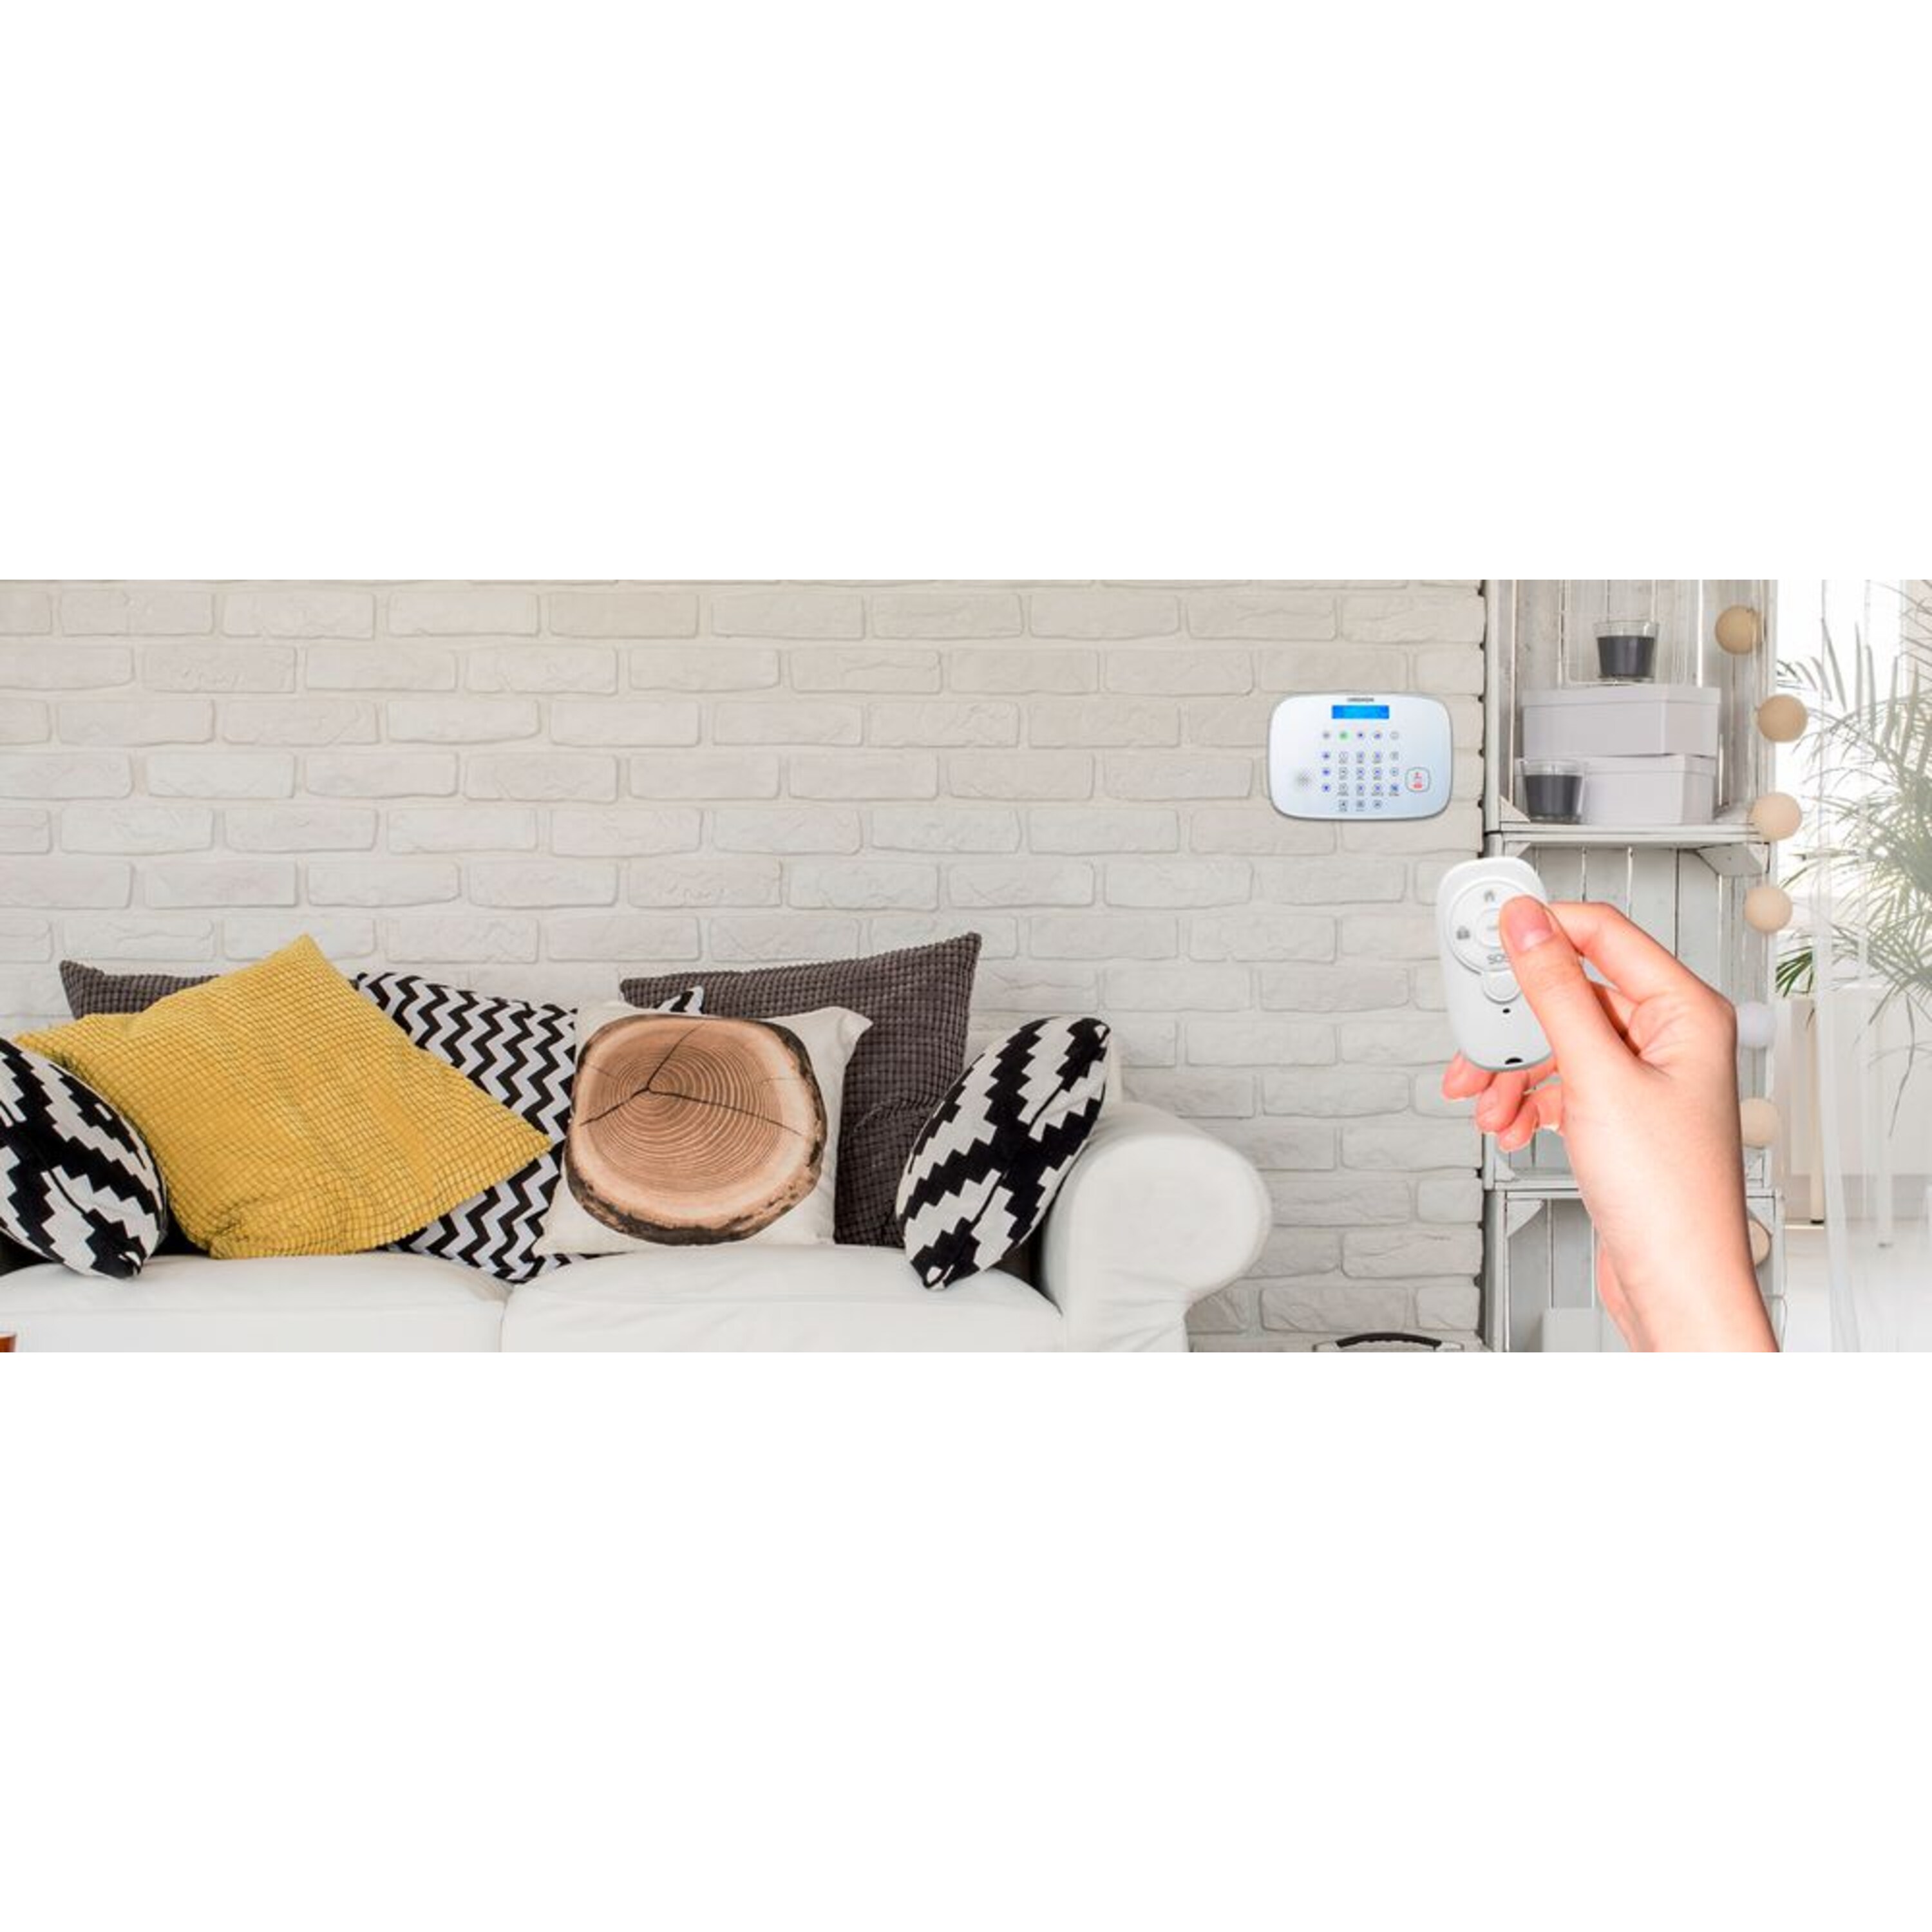 MEDION® Smart Home Alarmsystem Zentrale P85731 inkl. umfangreichem Zubehör - Artikelset 1.1